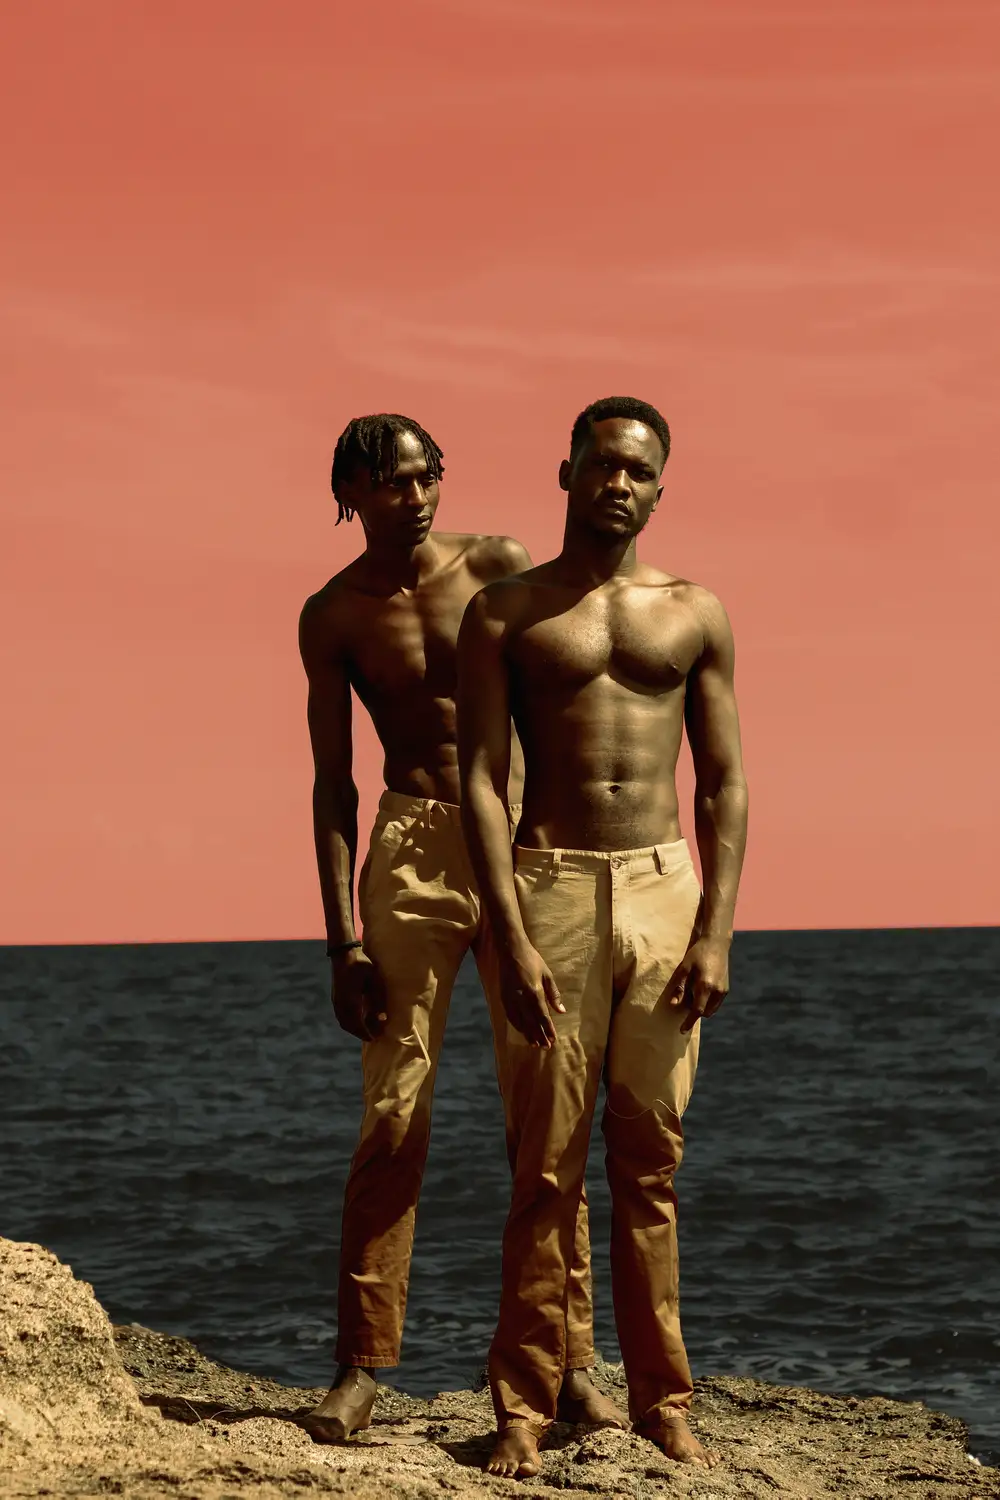 shirtless men posing near the ocean